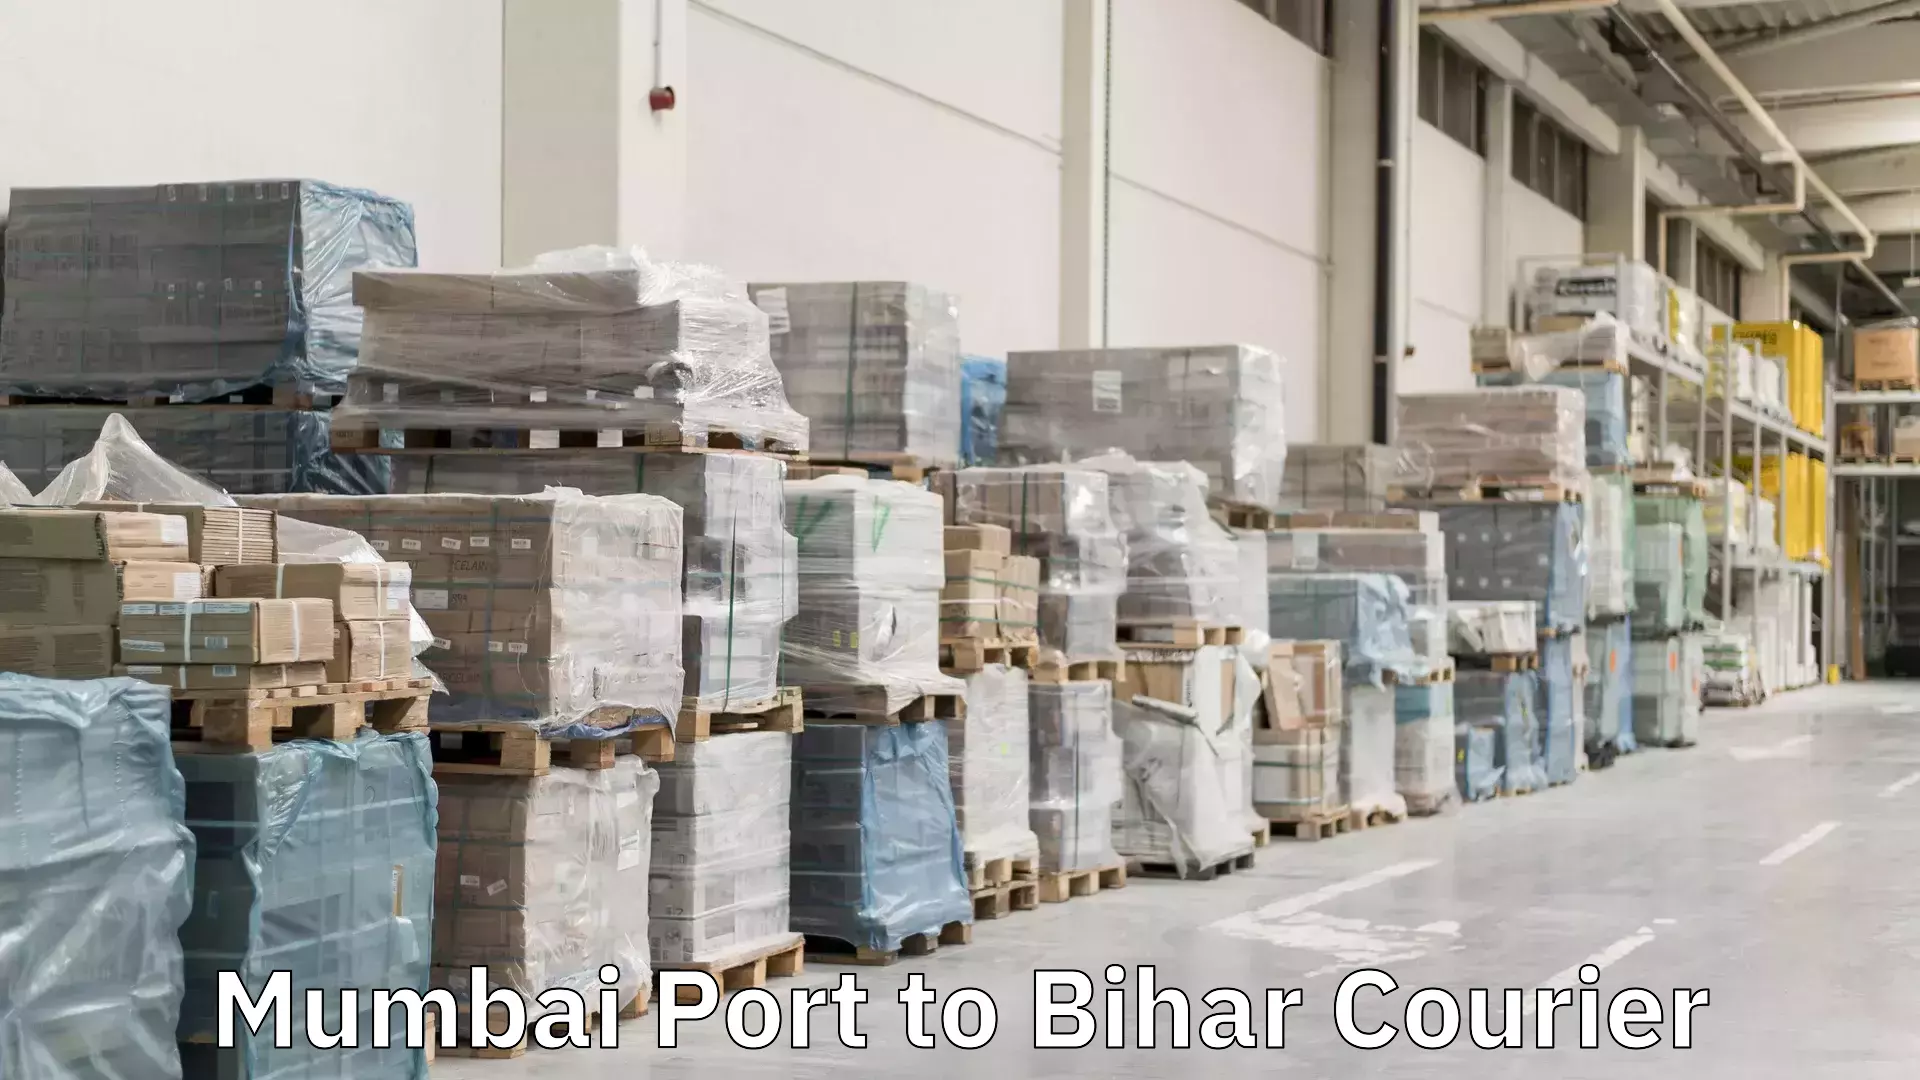 Digital courier platforms Mumbai Port to Bihar